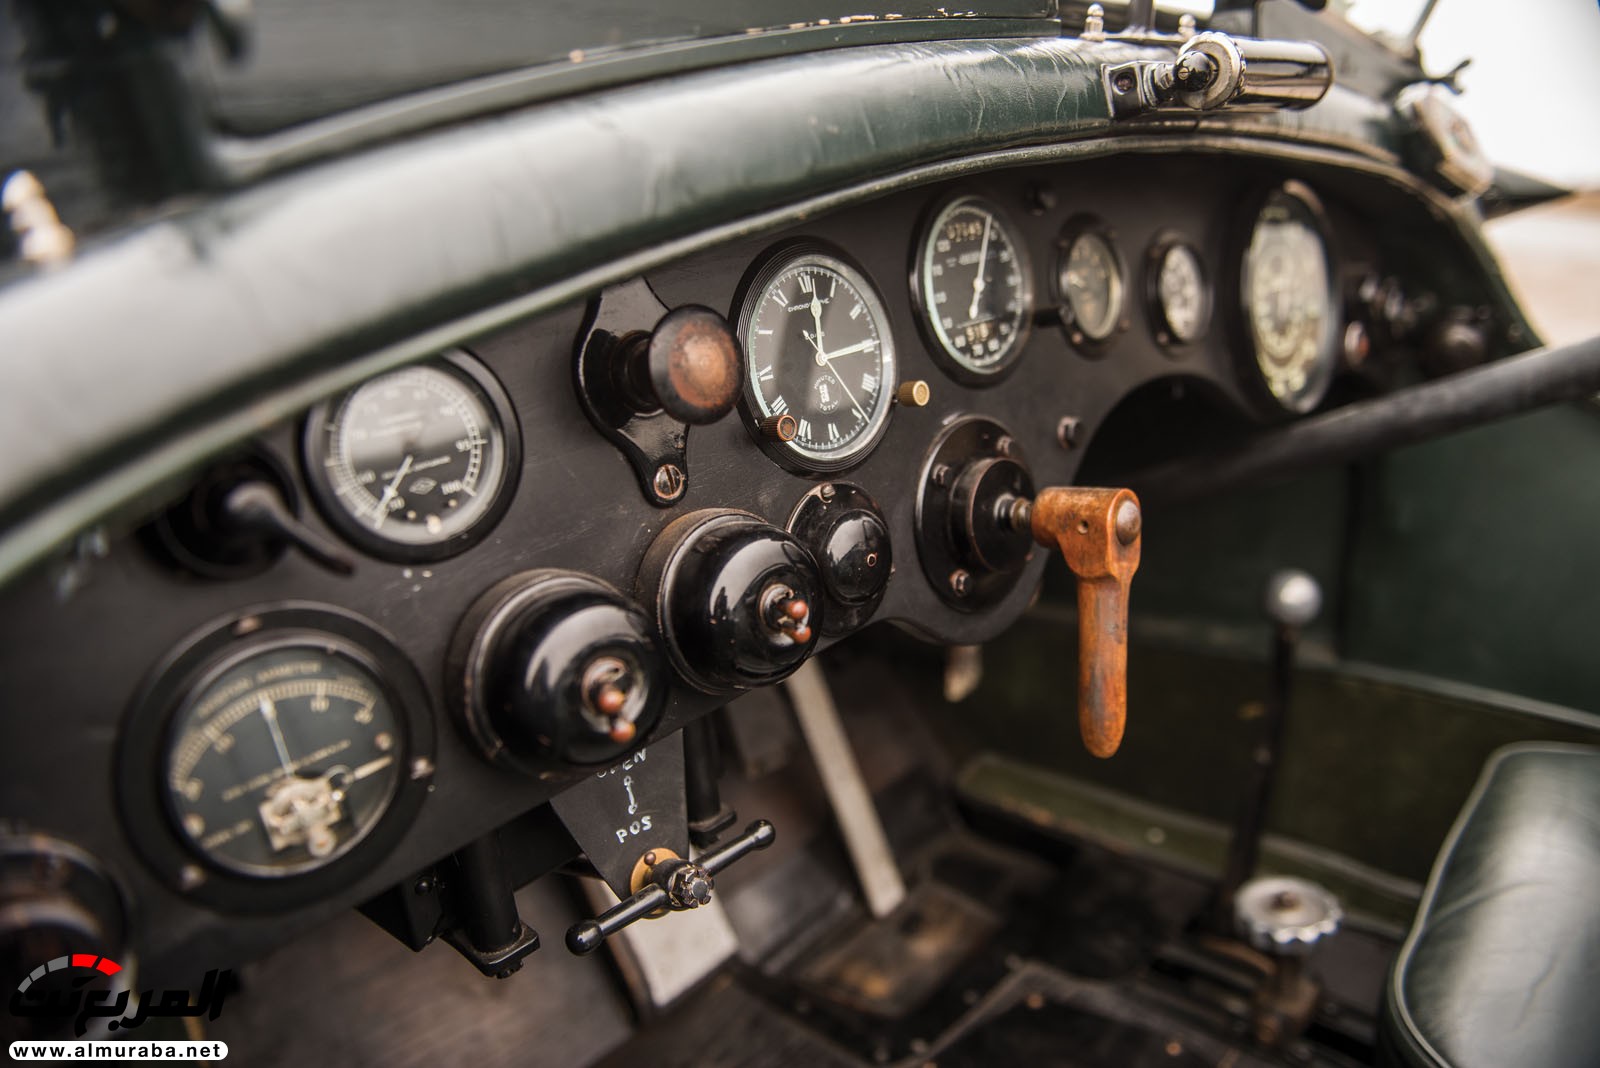 "بالصور" سيارة بنتلي موديل 1928 المشاركة في سباقات لومان تعرض بـ 7 مليون دولار في مزاد علني 111